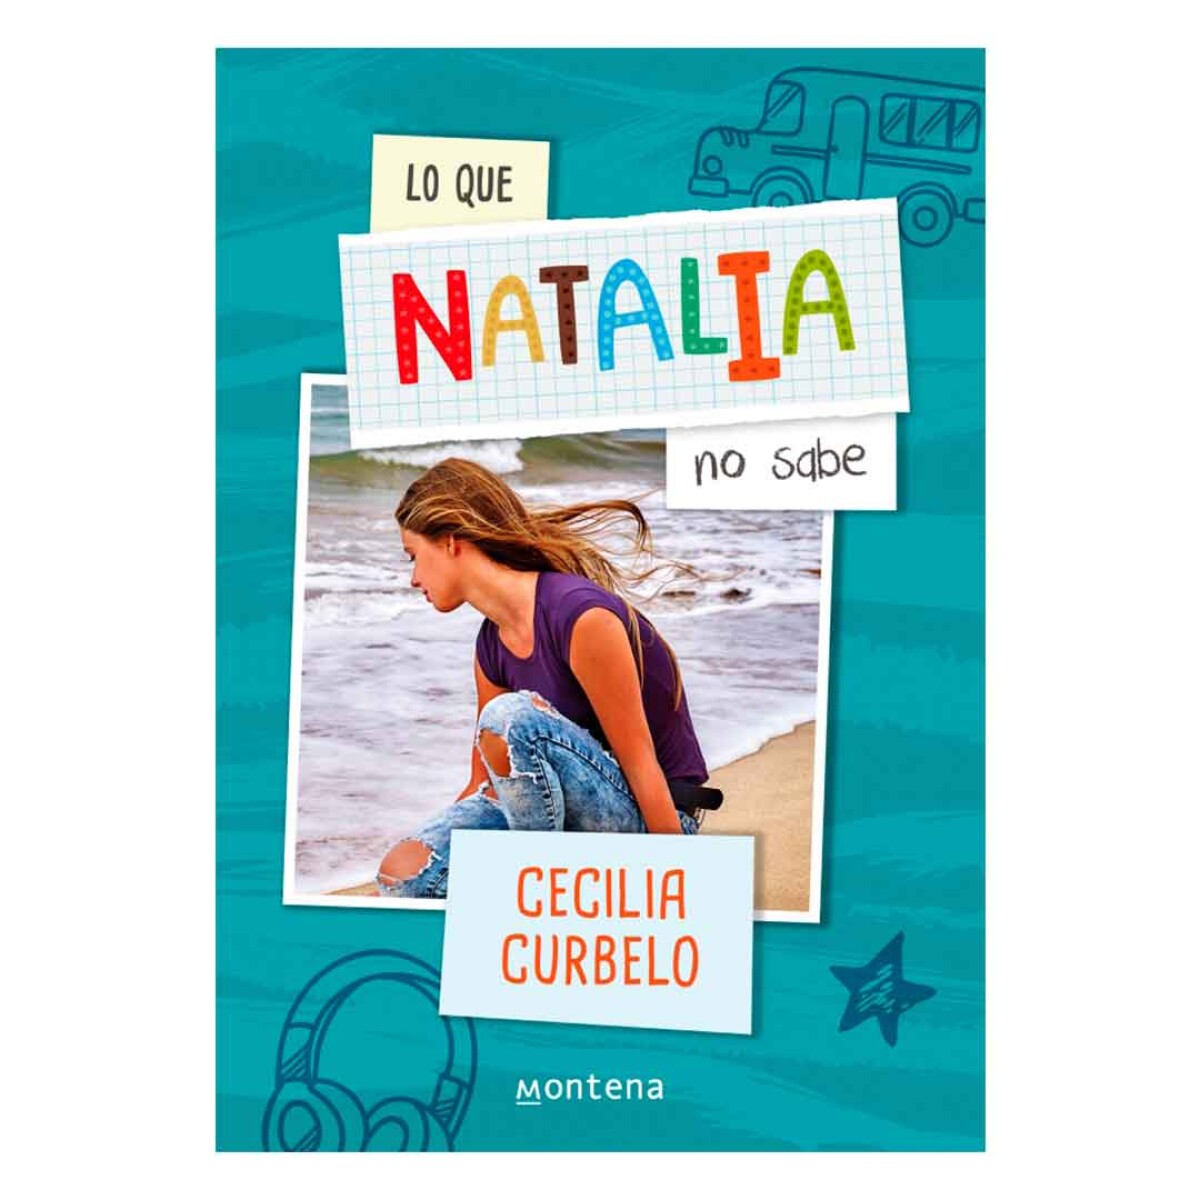 Libro Lo que Natalia no sabe by Cecilia Curbelo - 001 